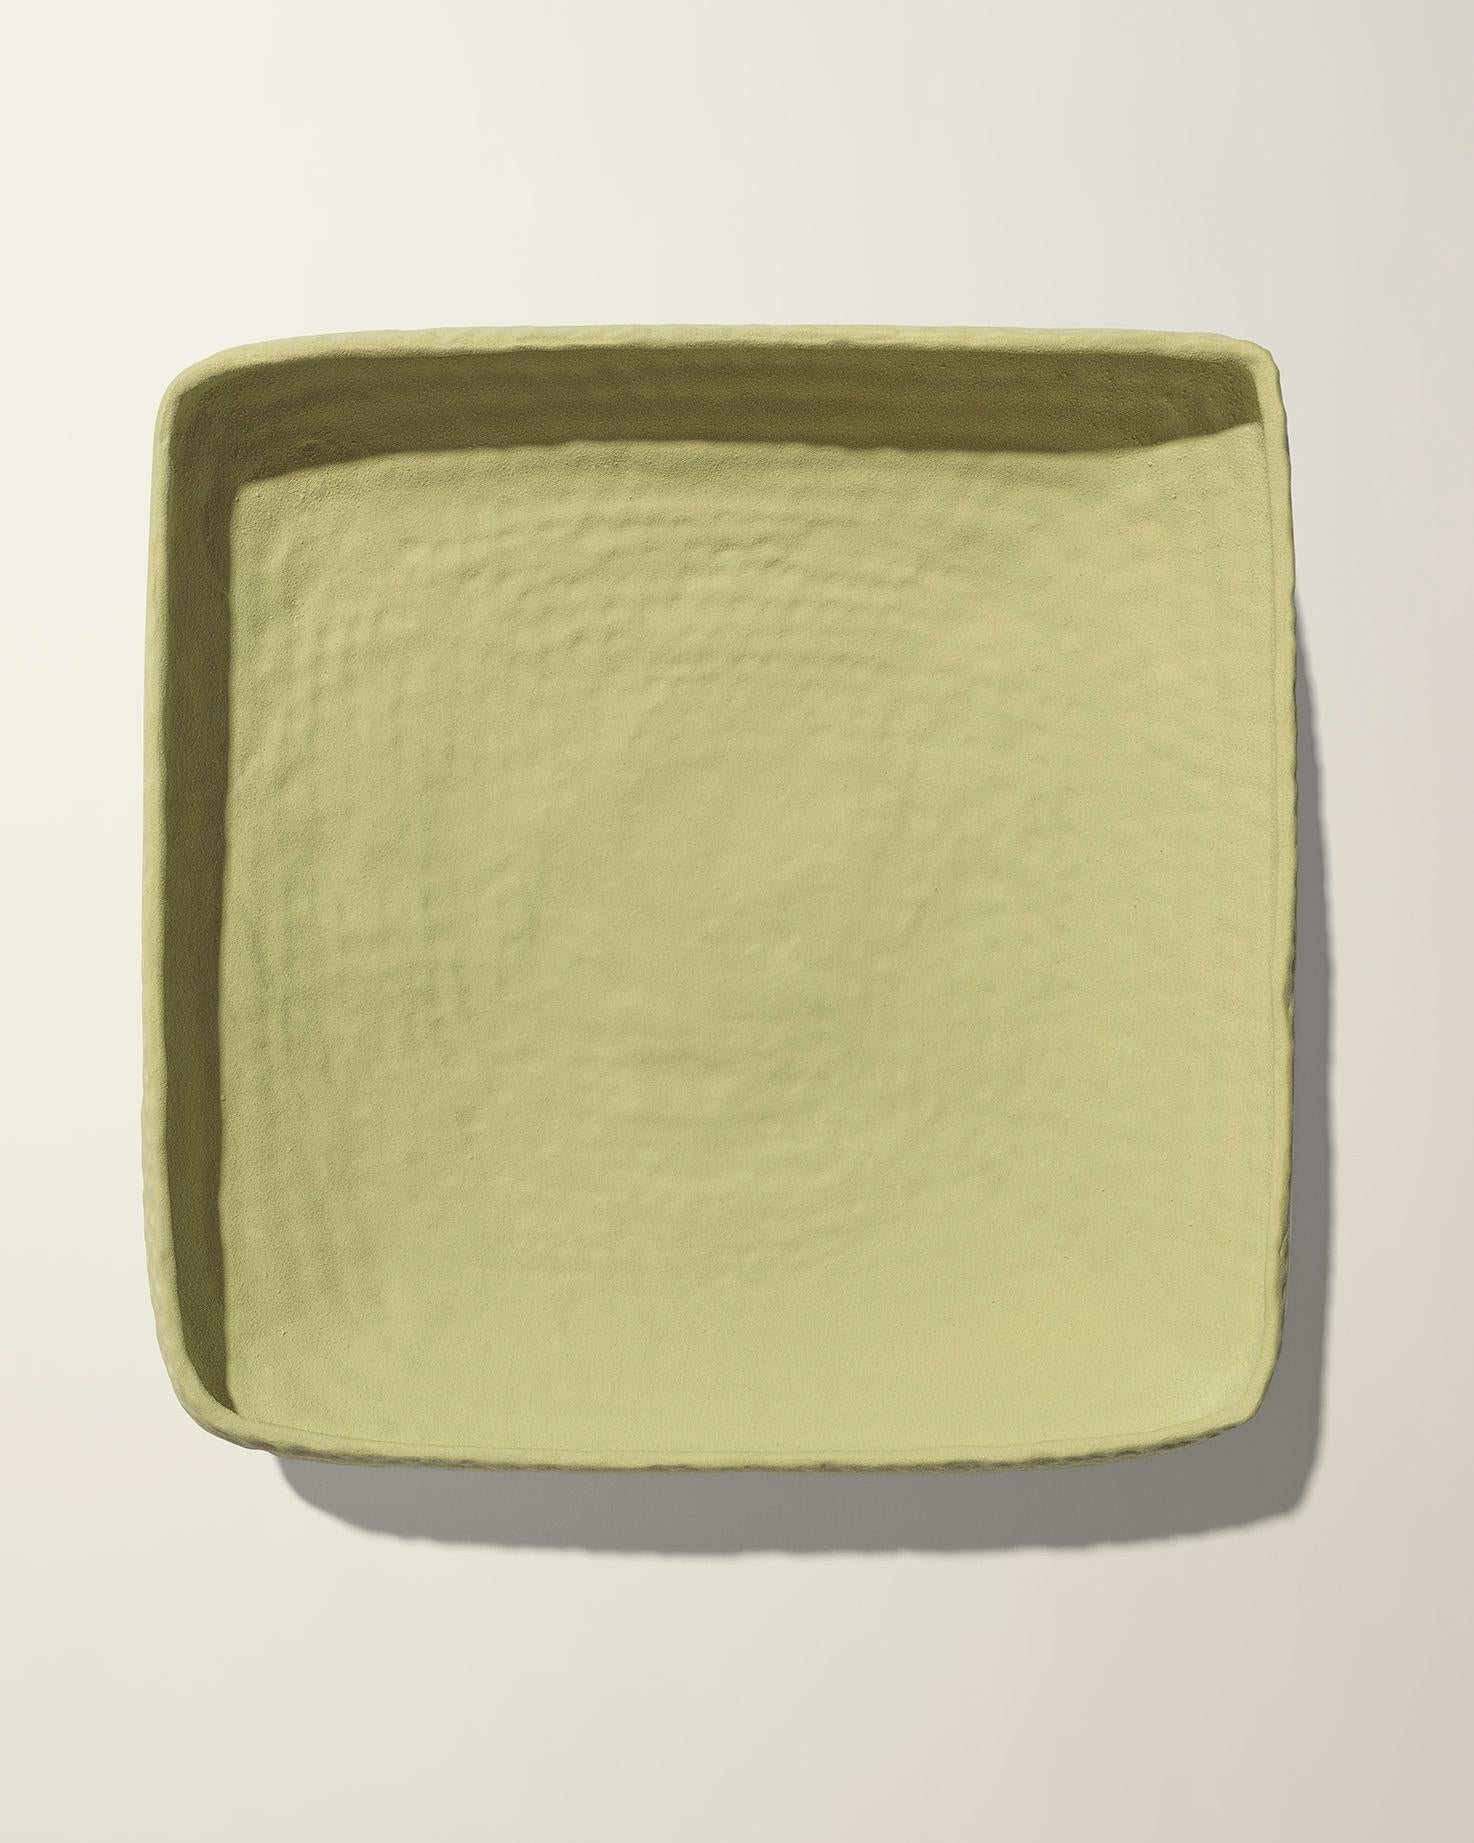 Fabriqué en Italie, ce bol bas martelé, de couleur pistache palegoldenrod mat, a été conçu par Andrea Anastasio dans l'historique Bottega Cercamica Gatti 1928 à Faenza, en Italie, spécialisée dans la création d'art céramique, qui convient